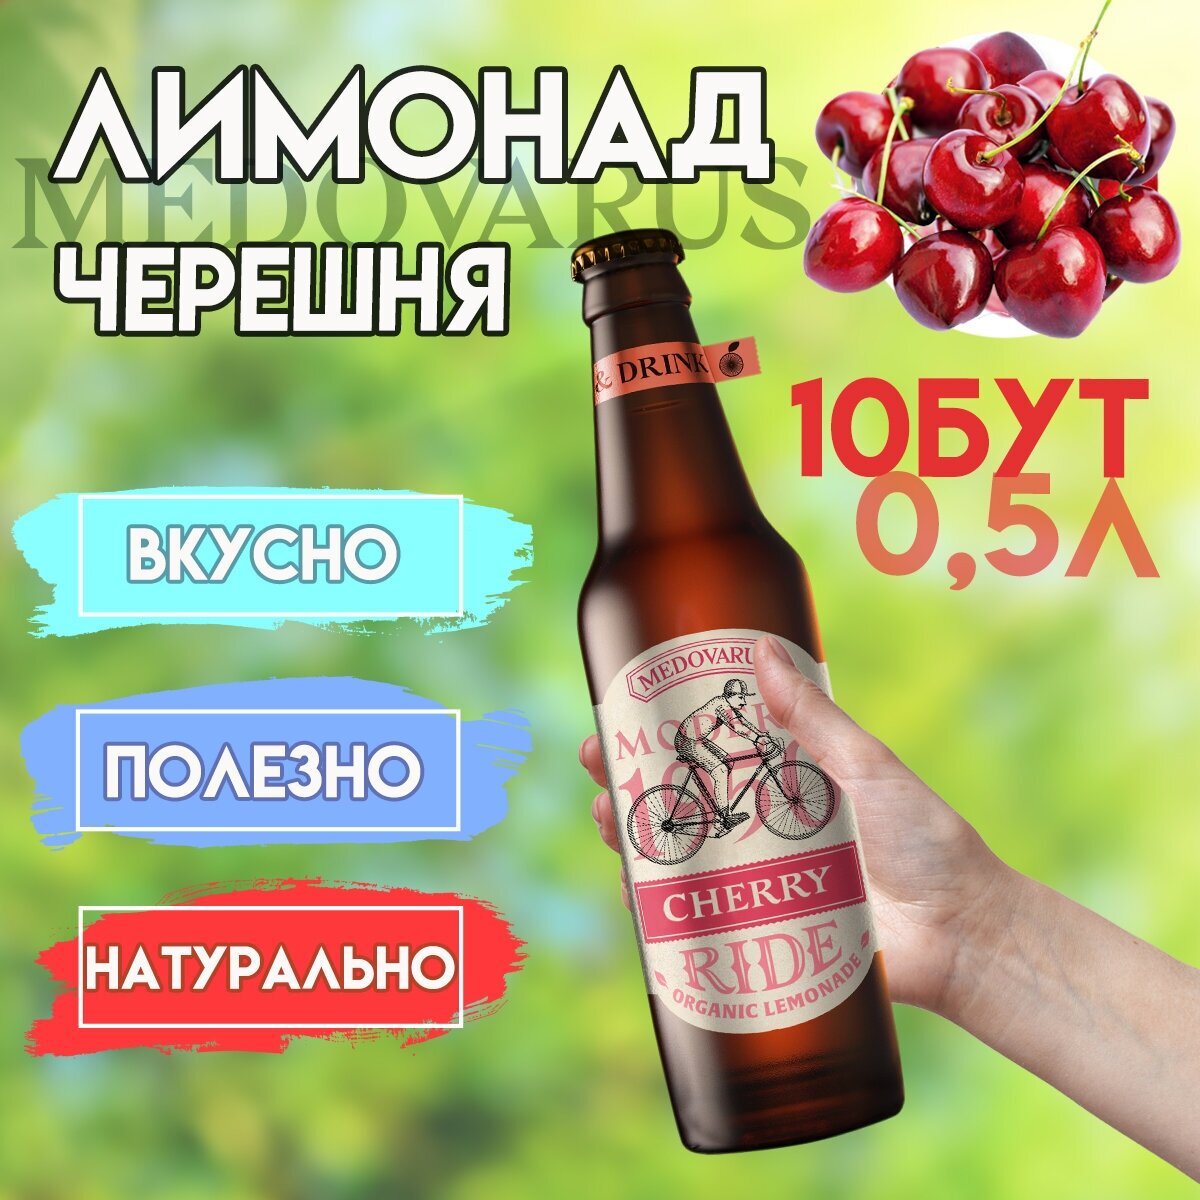 Лимонад "Черешня"RIDE от Медоварус, 10бут по 0,5л